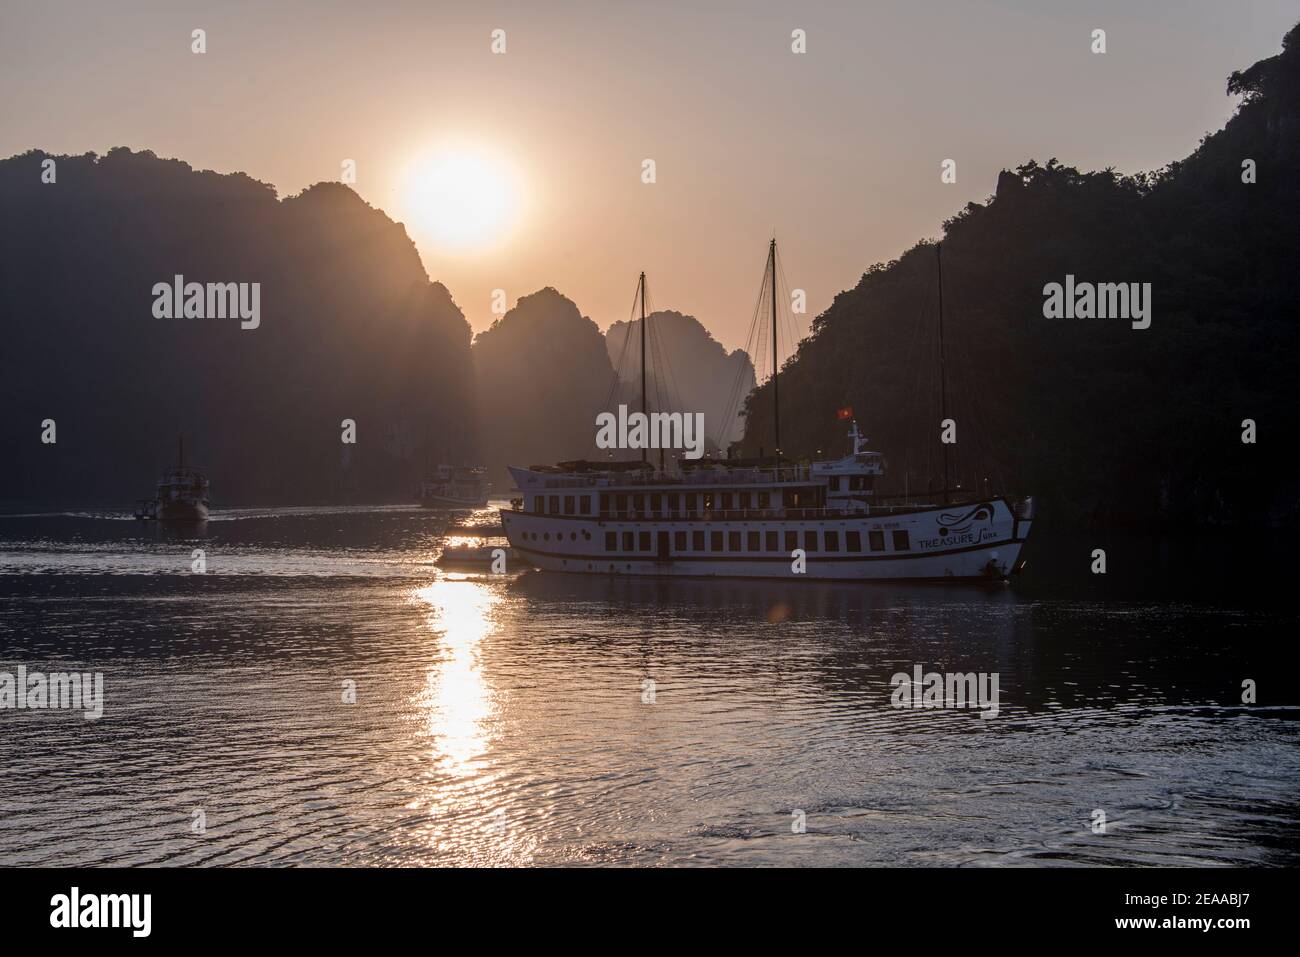 Bateau touristique rétroéclairé par le soleil levant, baie de Halong, Vietnam Banque D'Images